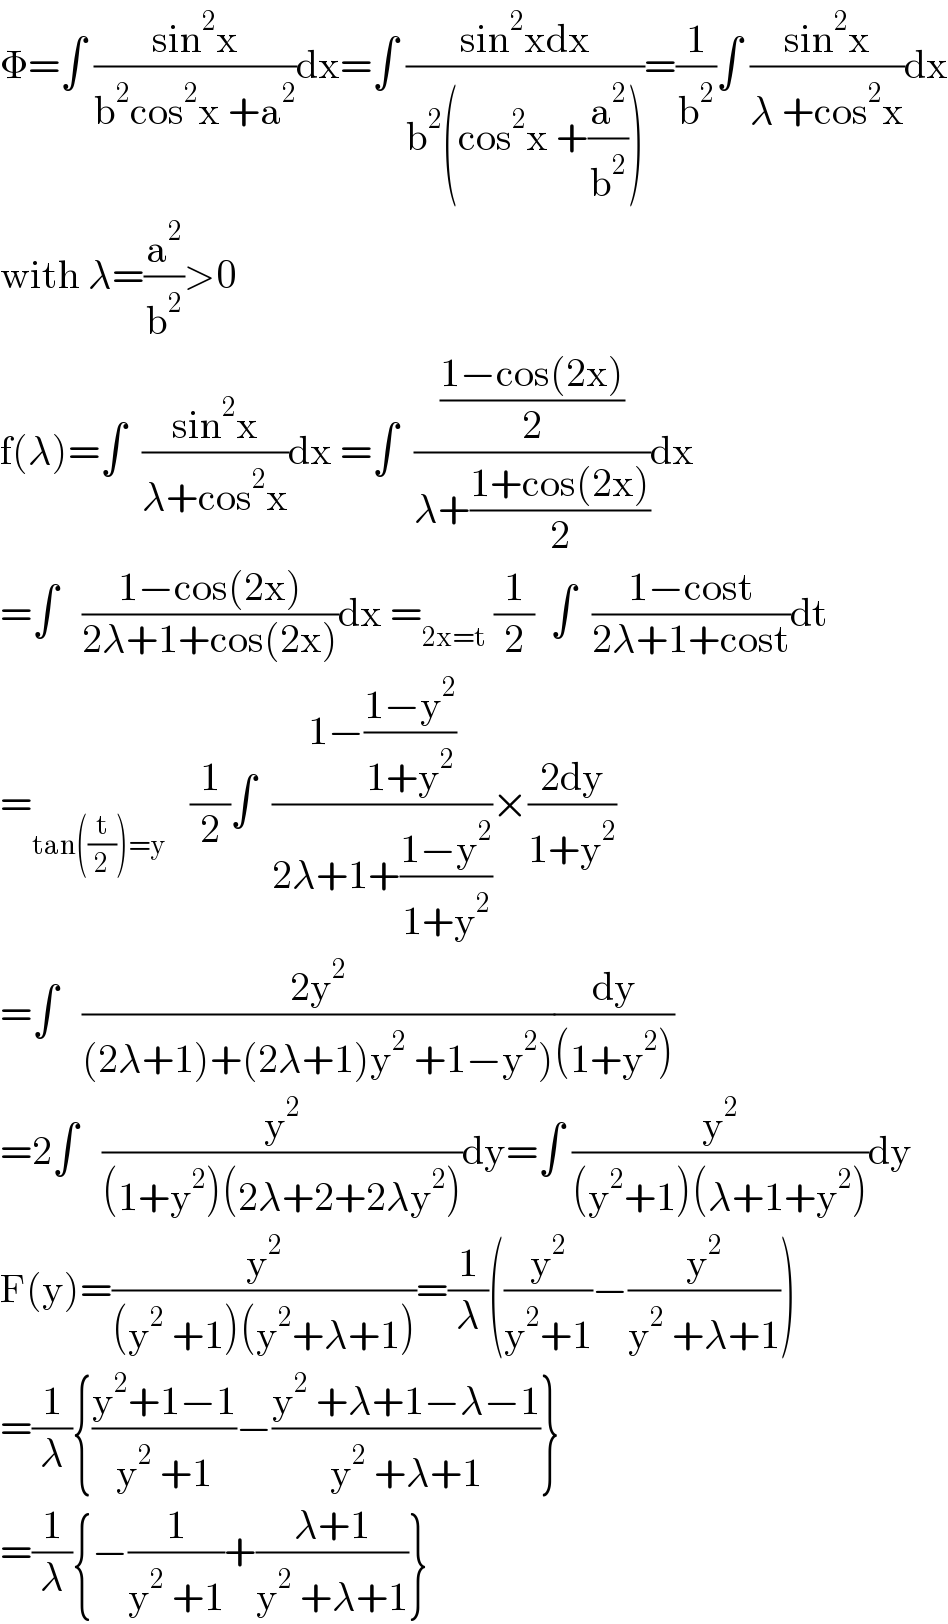 Φ=∫ ((sin^2 x)/(b^2 cos^2 x +a^2 ))dx=∫ ((sin^2 xdx)/(b^2 (cos^2 x +(a^2 /b^2 ))))=(1/b^2 )∫ ((sin^2 x)/(λ +cos^2 x))dx  with λ=(a^2 /b^2 )>0  f(λ)=∫  ((sin^2 x)/(λ+cos^2 x))dx =∫  (((1−cos(2x))/2)/(λ+((1+cos(2x))/2)))dx  =∫   ((1−cos(2x))/(2λ+1+cos(2x)))dx =_(2x=t)  (1/2)  ∫  ((1−cost)/(2λ+1+cost))dt  =_(tan((t/2))=y)    (1/2)∫  ((1−((1−y^2 )/(1+y^2 )))/(2λ+1+((1−y^2 )/(1+y^2 ))))×((2dy)/(1+y^2 ))  =∫   ((2y^2 )/((2λ+1)+(2λ+1)y^2  +1−y^2 )))(dy/((1+y^2 )))  =2∫   (y^2 /((1+y^2 )(2λ+2+2λy^2 )))dy=∫ (y^2 /((y^2 +1)(λ+1+y^2 )))dy  F(y)=(y^2 /((y^2  +1)(y^2 +λ+1)))=(1/λ)((y^2 /(y^2 +1))−(y^2 /(y^2  +λ+1)))  =(1/λ){((y^2 +1−1)/(y^2  +1))−((y^2  +λ+1−λ−1)/(y^2  +λ+1))}  =(1/λ){−(1/(y^2  +1))+((λ+1)/(y^2  +λ+1))}  